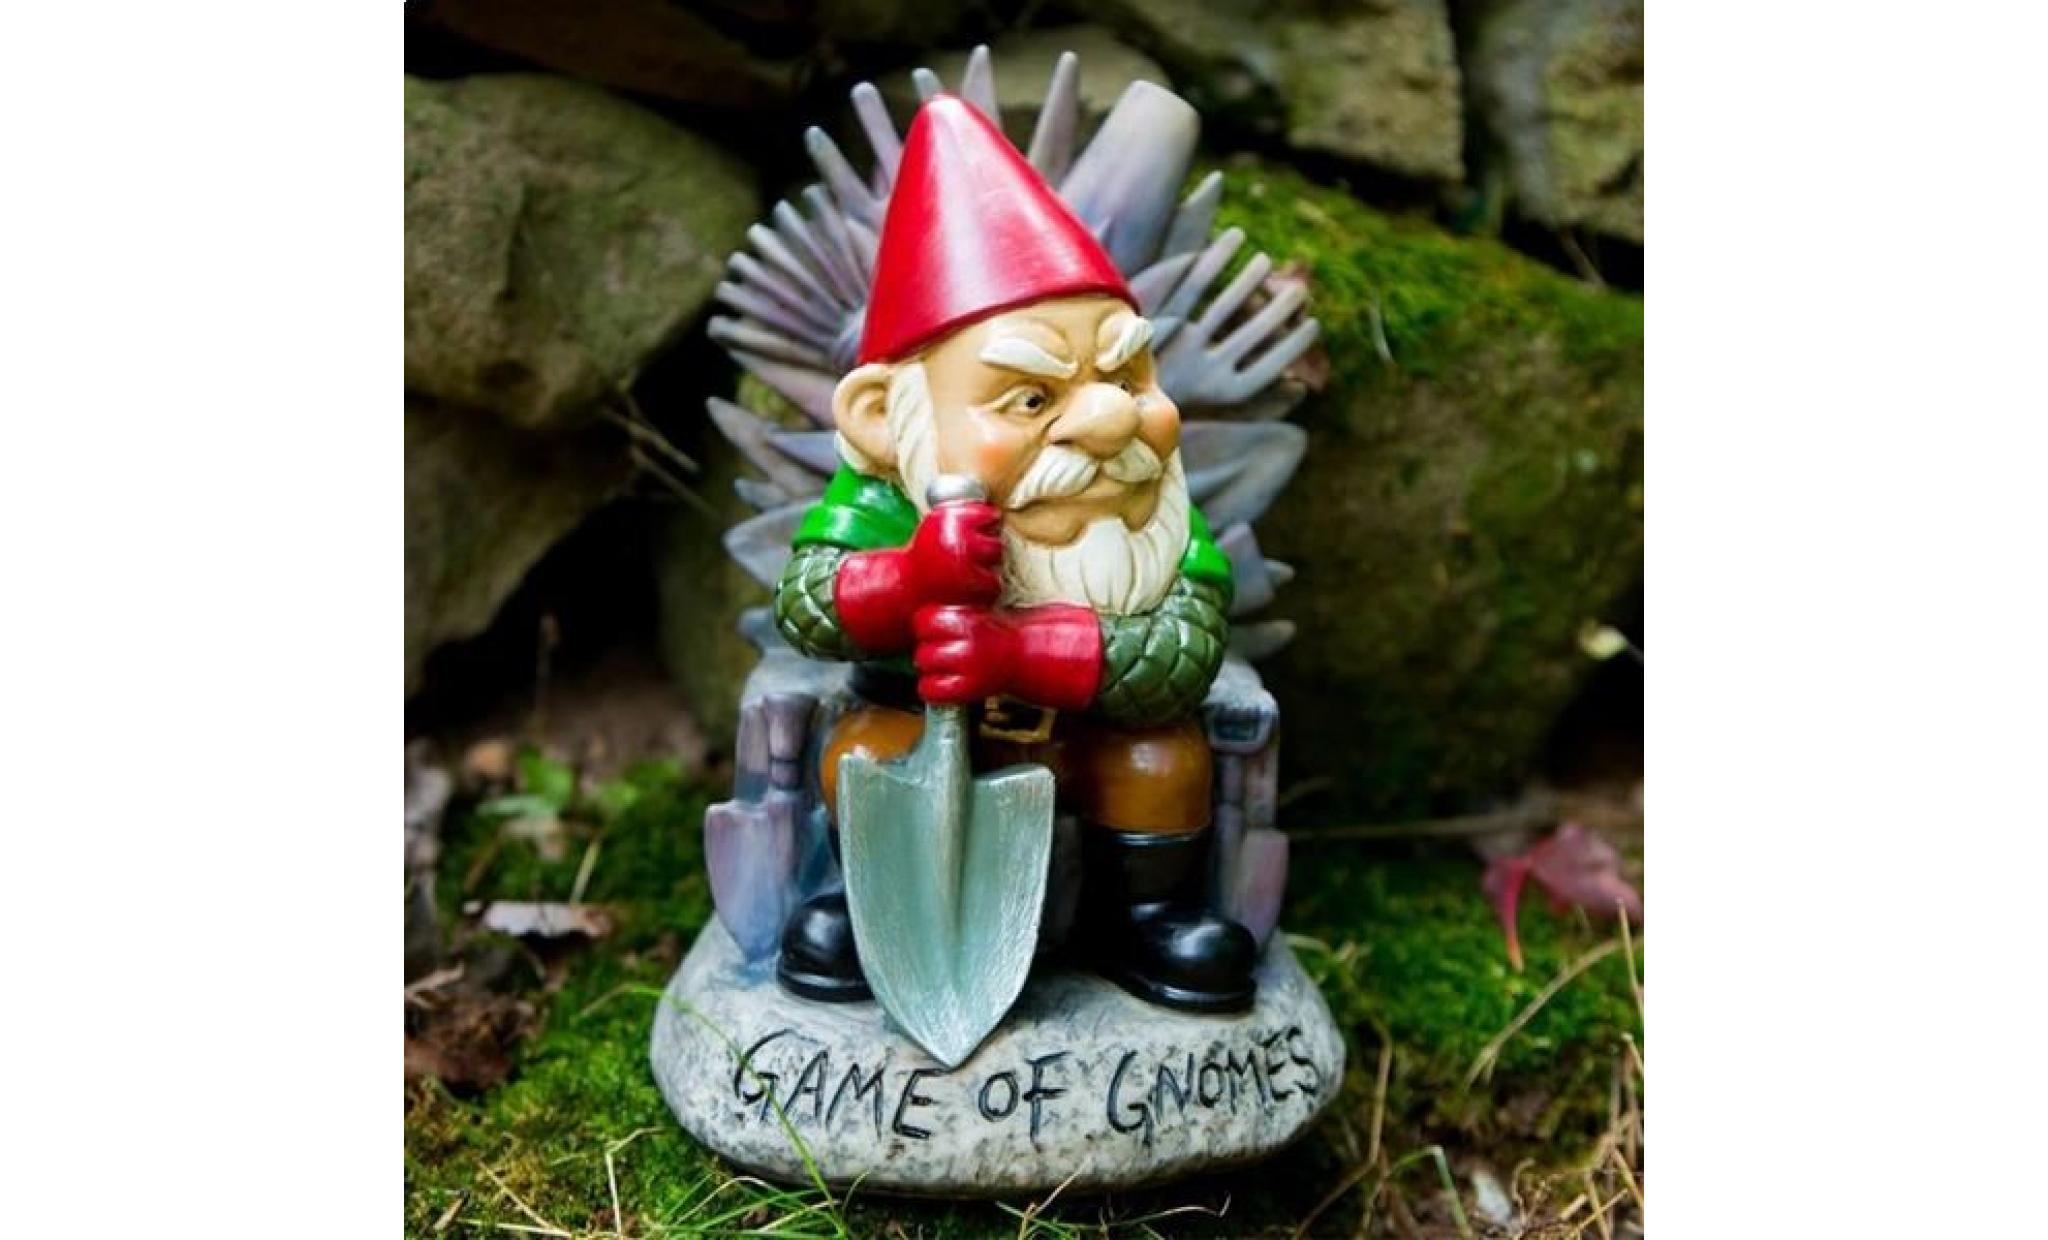 gnome nain de jardin sous le thème game of thrones * dimensions : 15,3 x 13,5 x 23,3 cm * matière : résine * peinture résistante